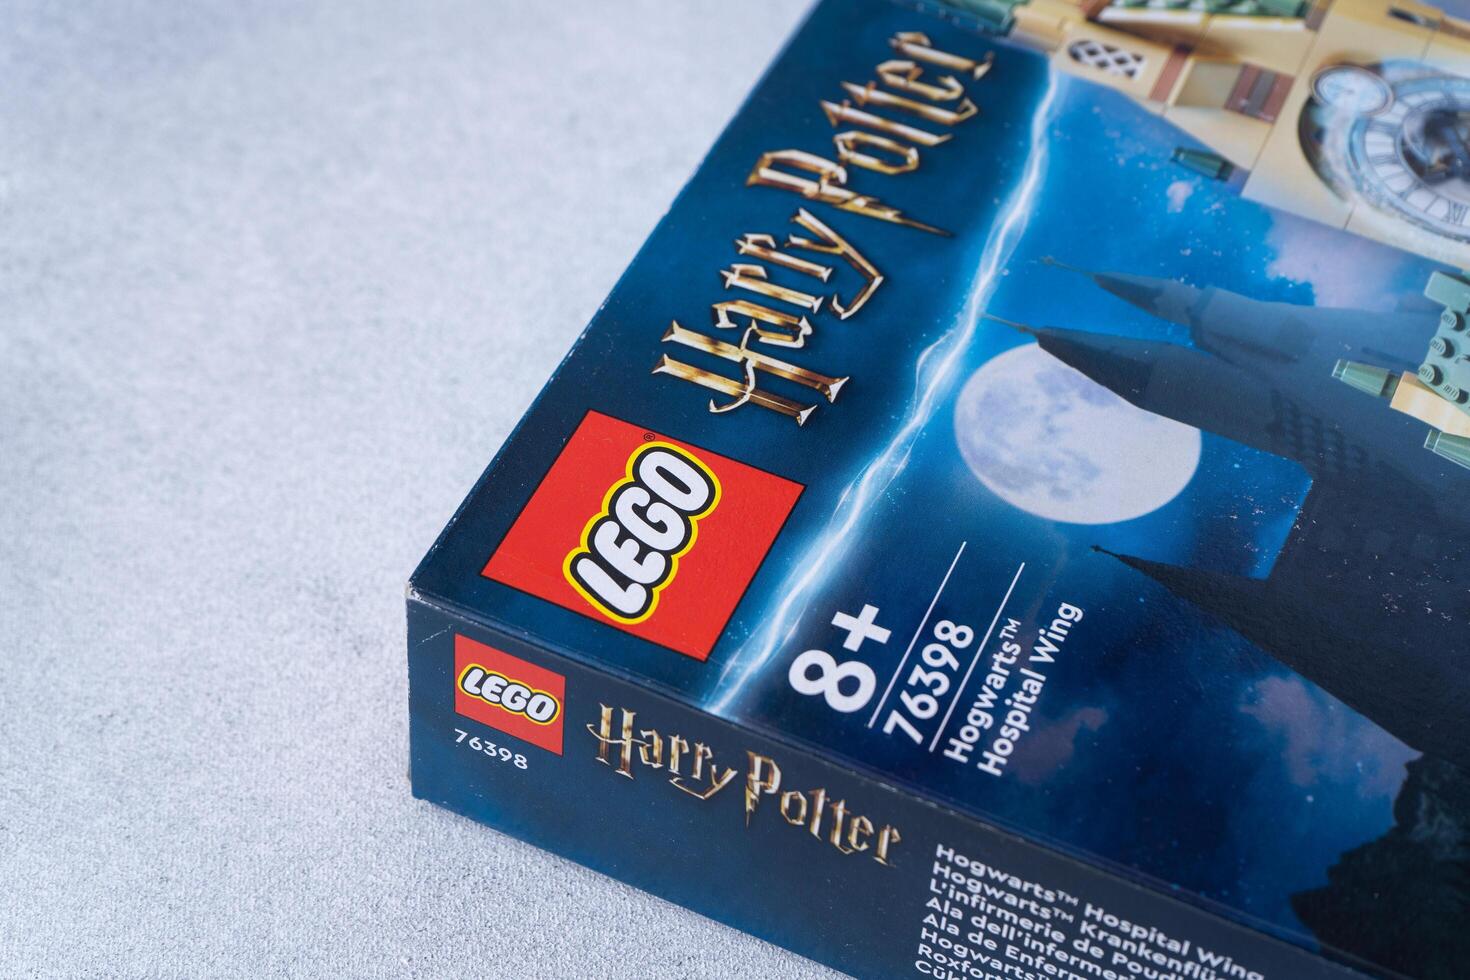 Lego Konstrukteur Box basierend auf das Harry Töpfer Bücher durch jk Rowling. Schloss Spiel einstellen zum Kinder und Fans. Ukraine, kyiv - - Januar 17, 2024. foto